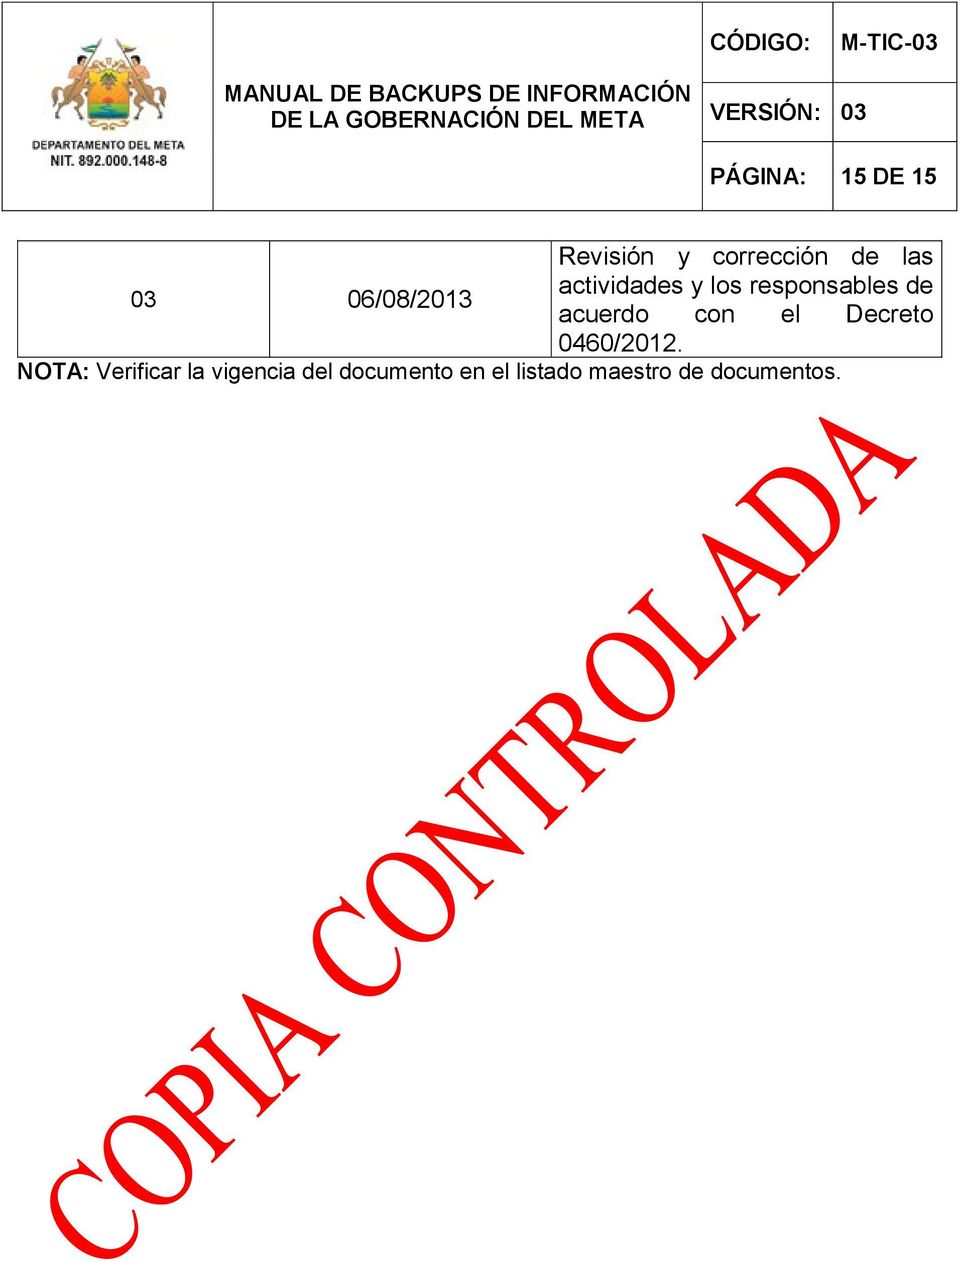 acuerdo con el Decreto 0460/2012.